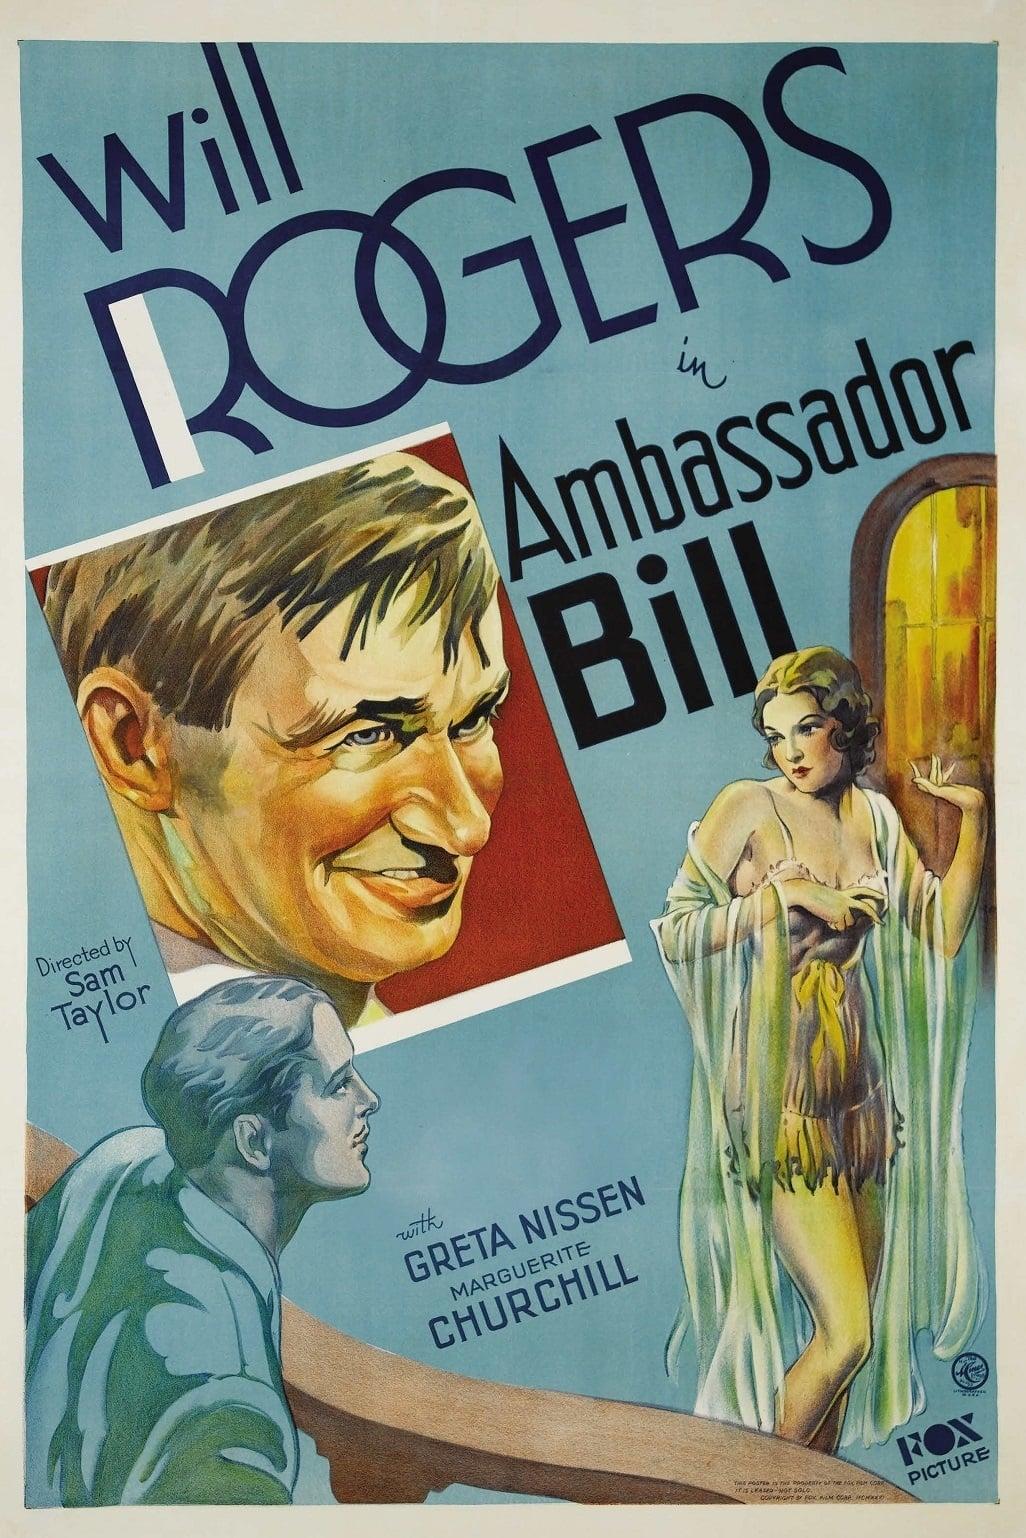 Ambassador Bill poster